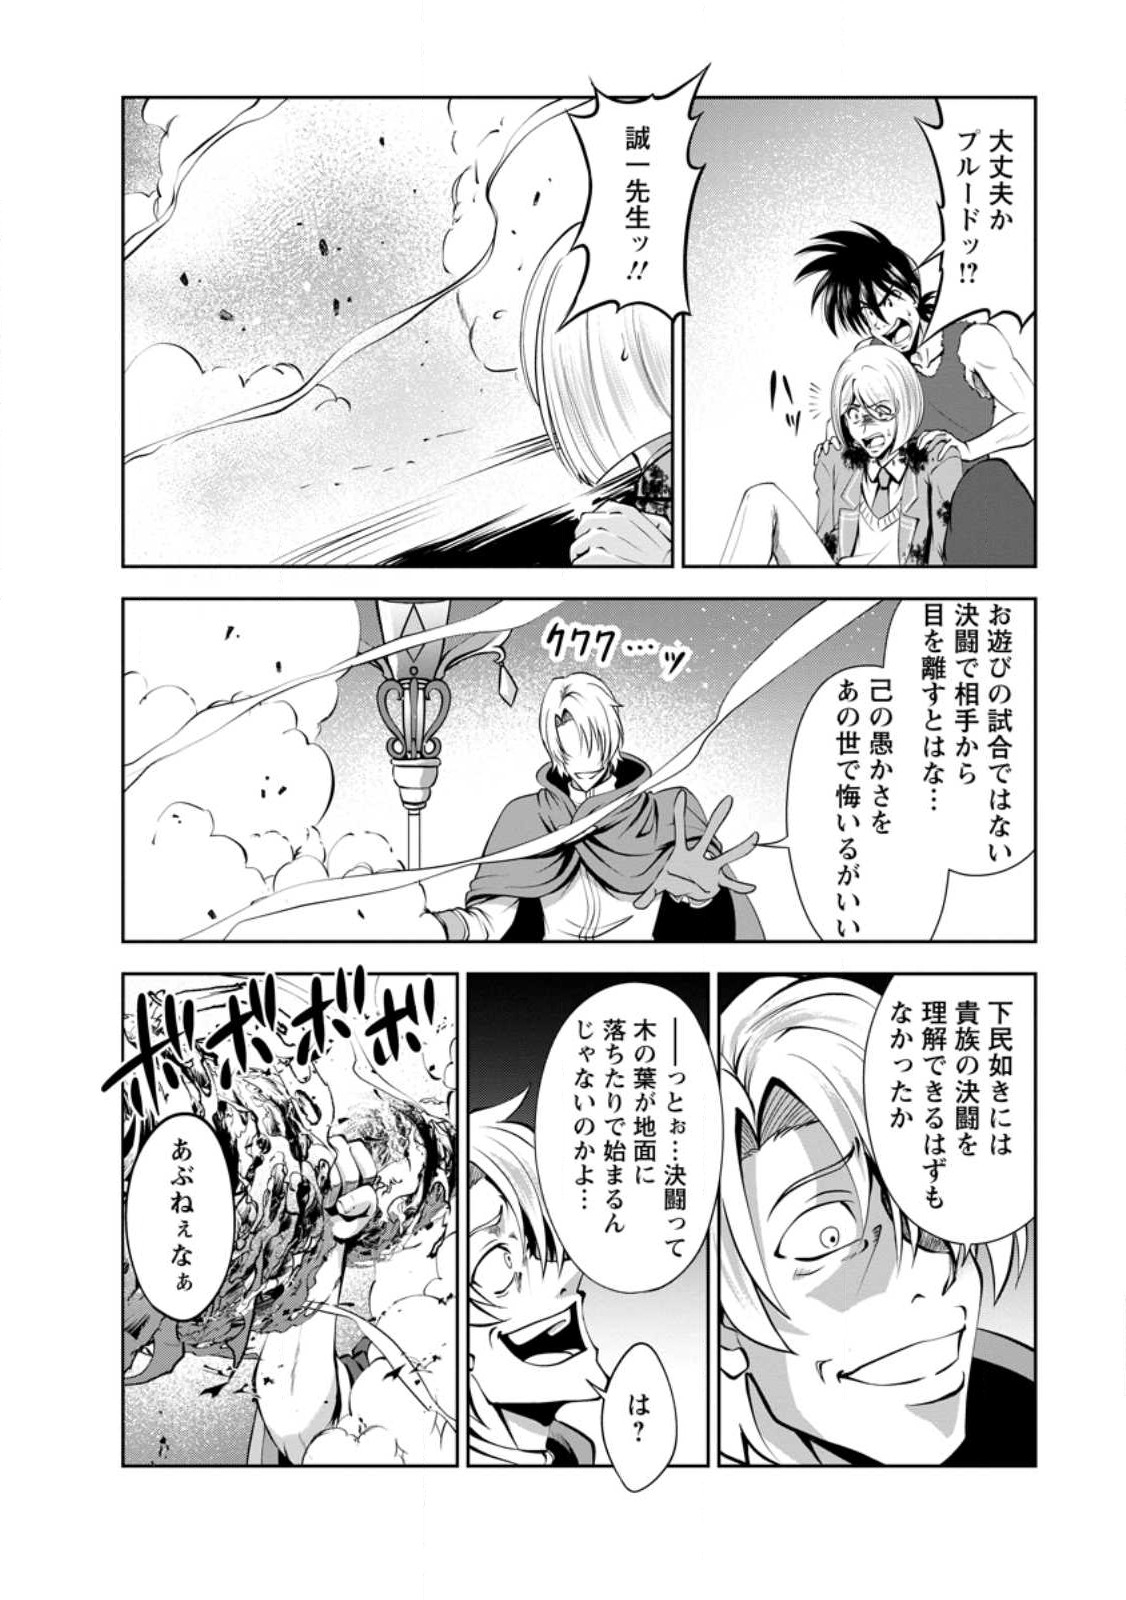 Shinka no Mi - Chapter 40.1 : r/Mangaeffect